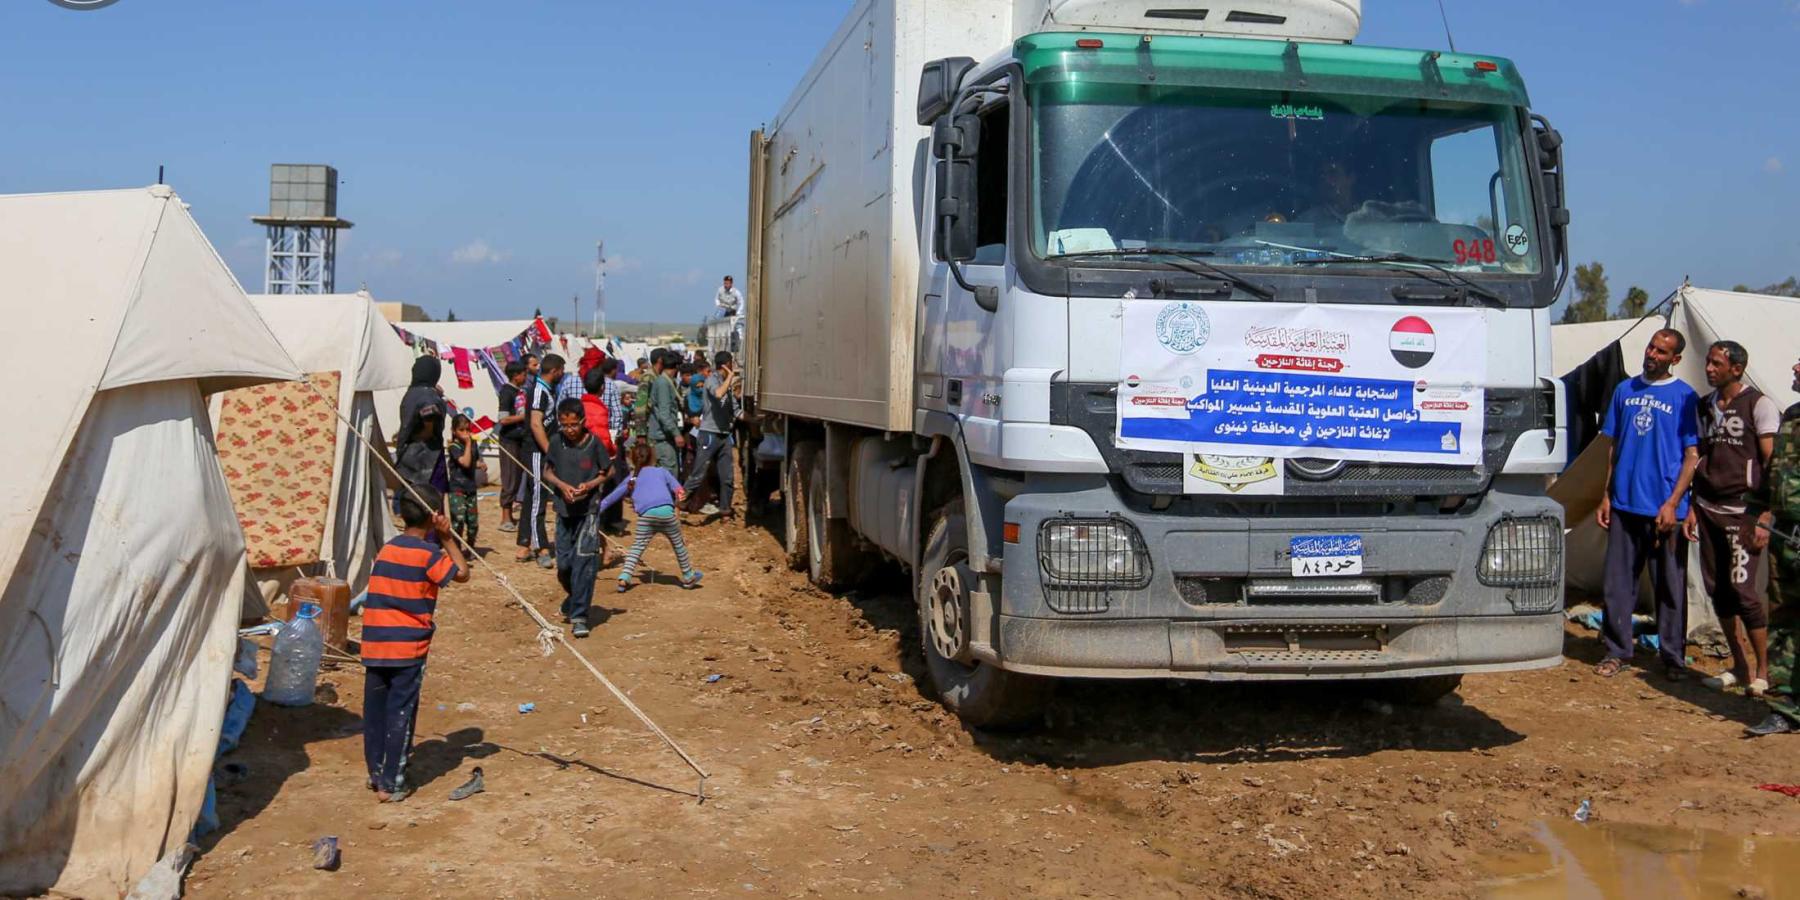 الأمانة العامة للعتبة العلوية تنفذ برنامجا موسعا لتوزيع المساعدات لآلاف النازحين في أطراف الموصل